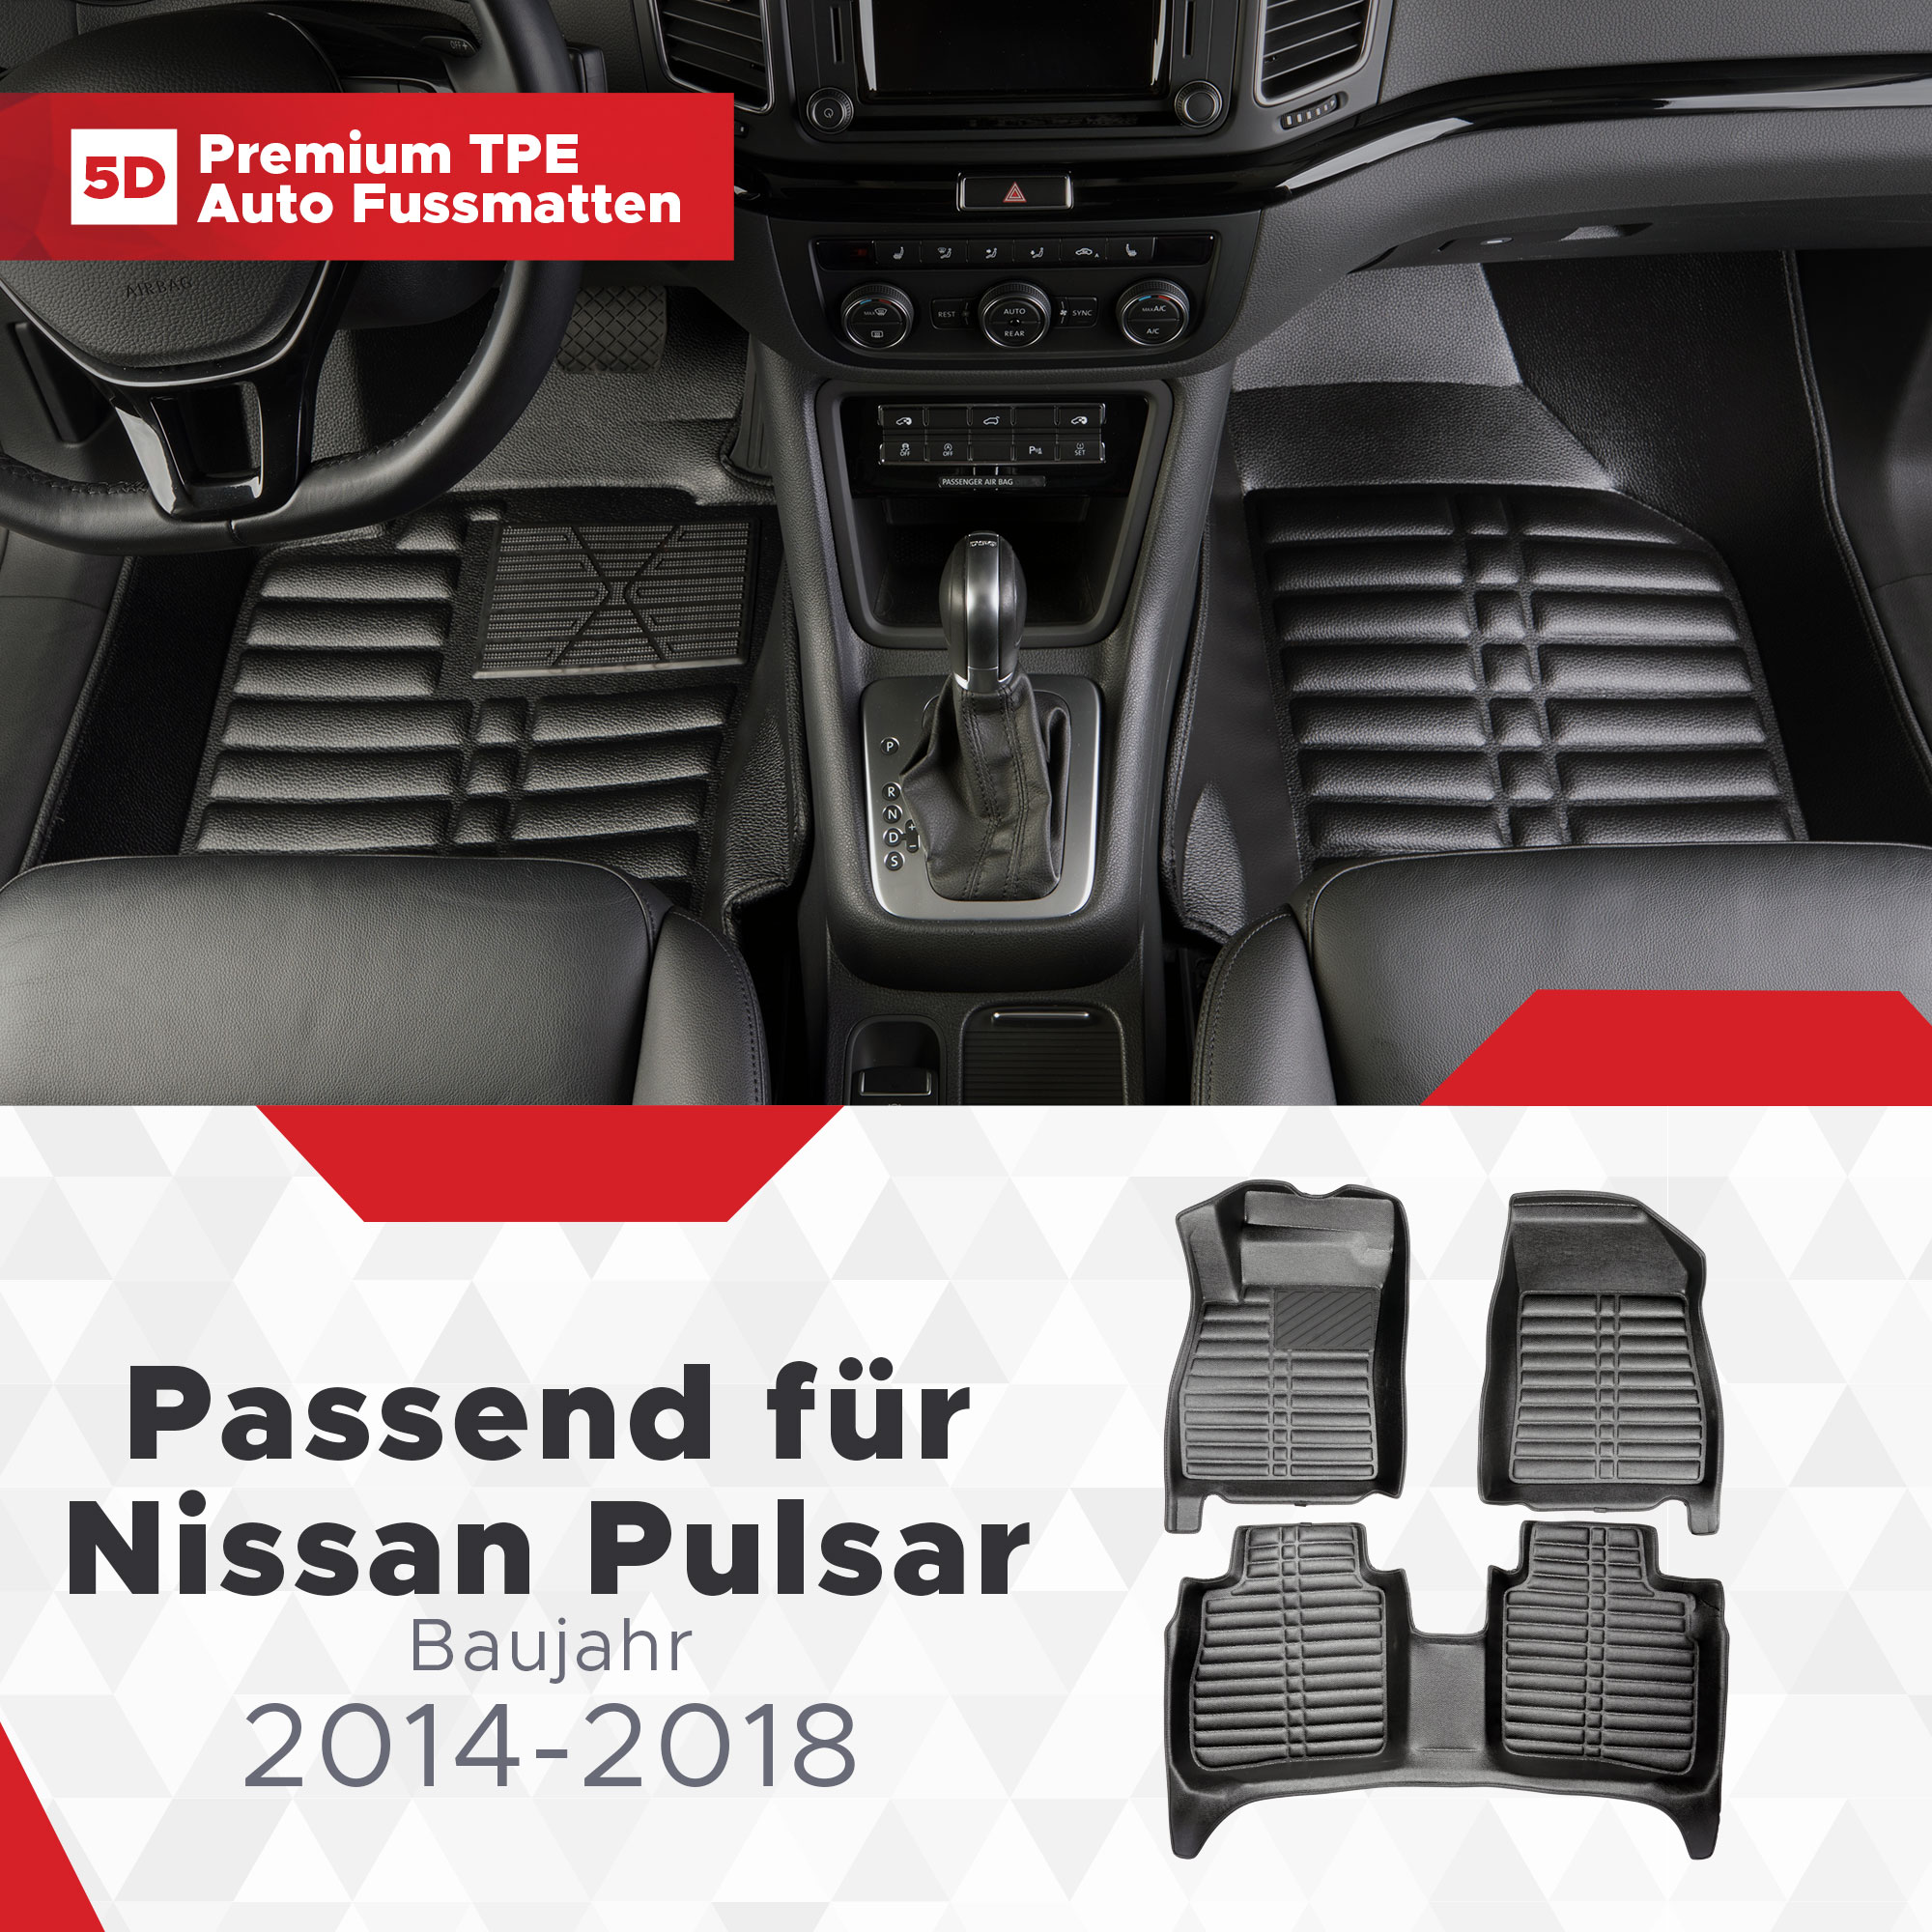 5D Nissan Pulsar Fussmatten Bj 2014-2018 TPE